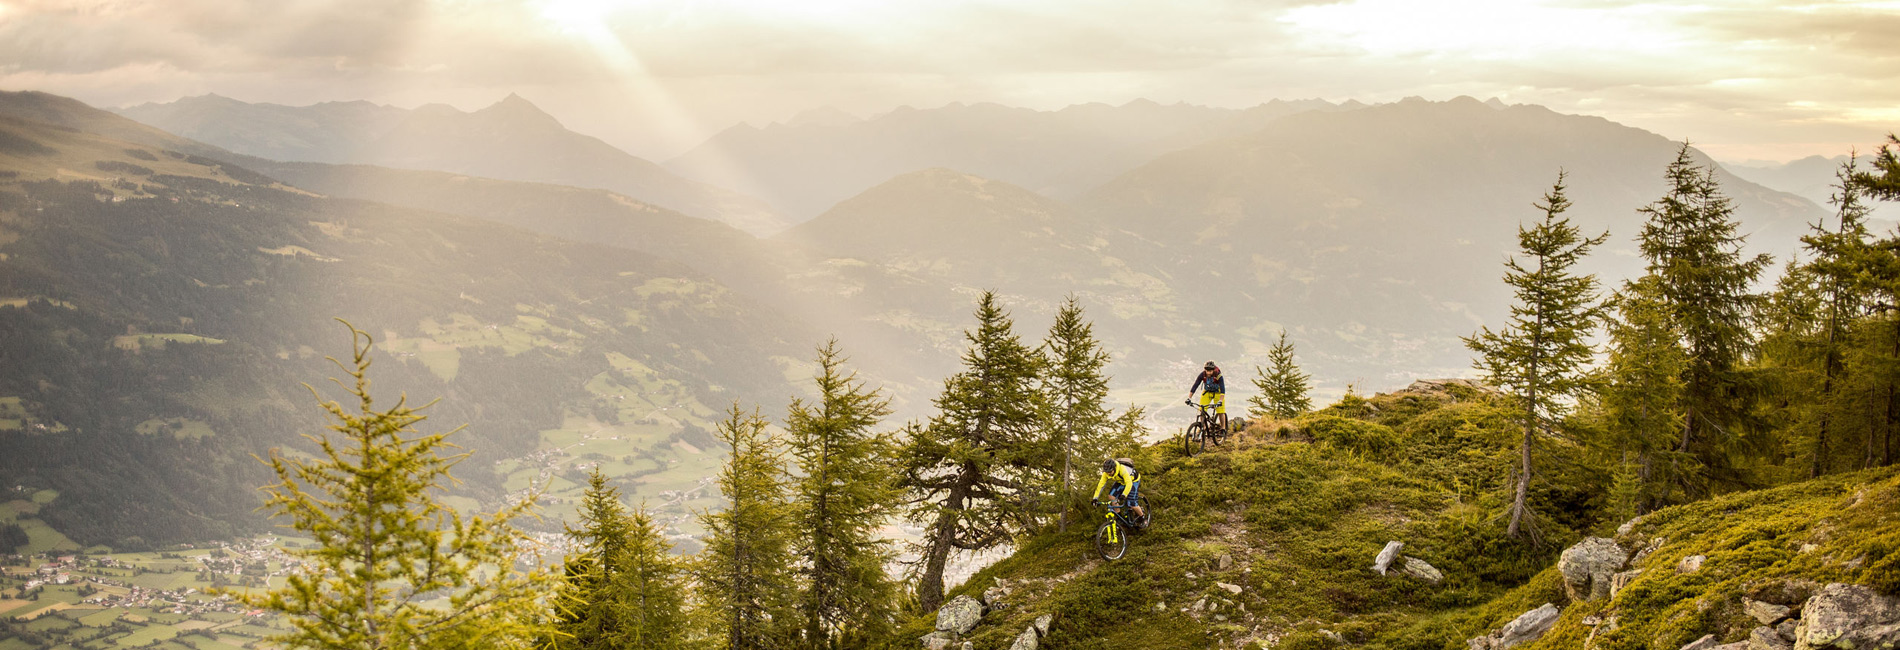 Bikepark Lienz in Tirol - Freeriden und Uphill biken - copyright TVB Osttirol/ Christof Breiner